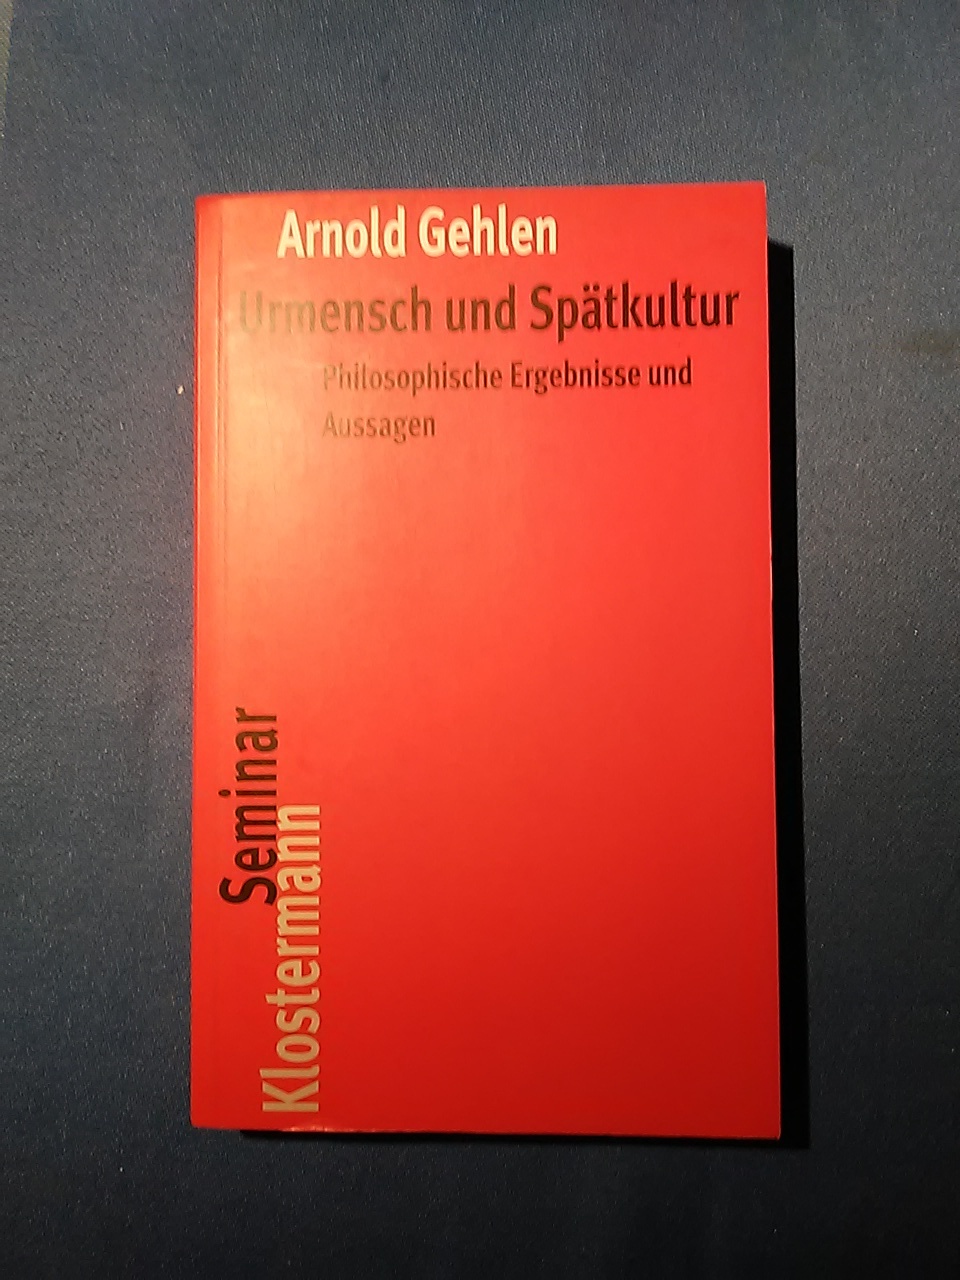 Urmensch und Spätkultur : philosophische Ergebnisse und Aussagen. Klostermann-Seminar ; 4. - Gehlen, Arnold.